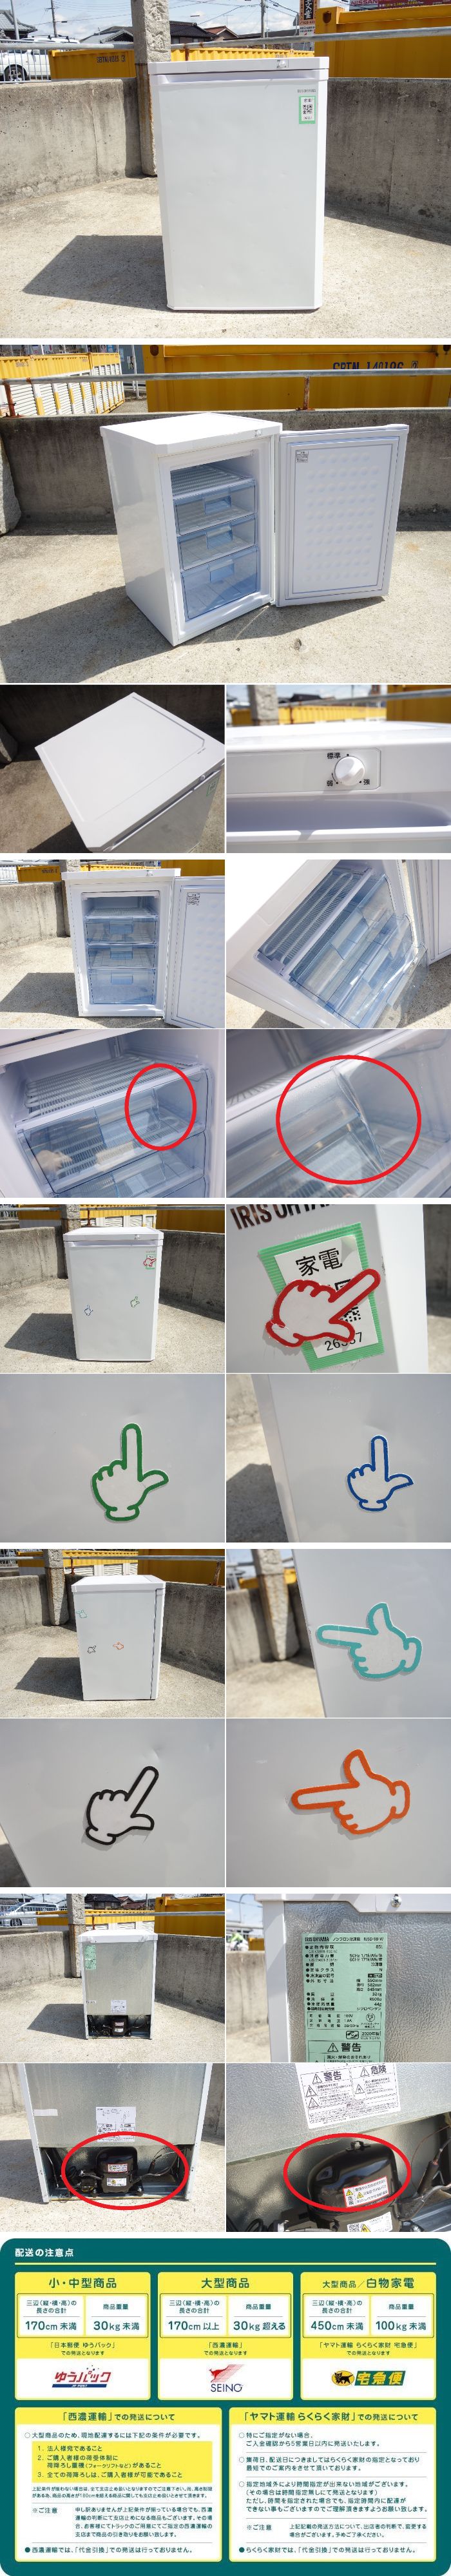 在庫好評O▼アイリスオーヤマ 冷凍庫 冷凍ストッカー フリーザ 2020年 85L 1ドア 耐熱性能天板 引き出しタイプ IUSD-98B (26337) 冷凍庫